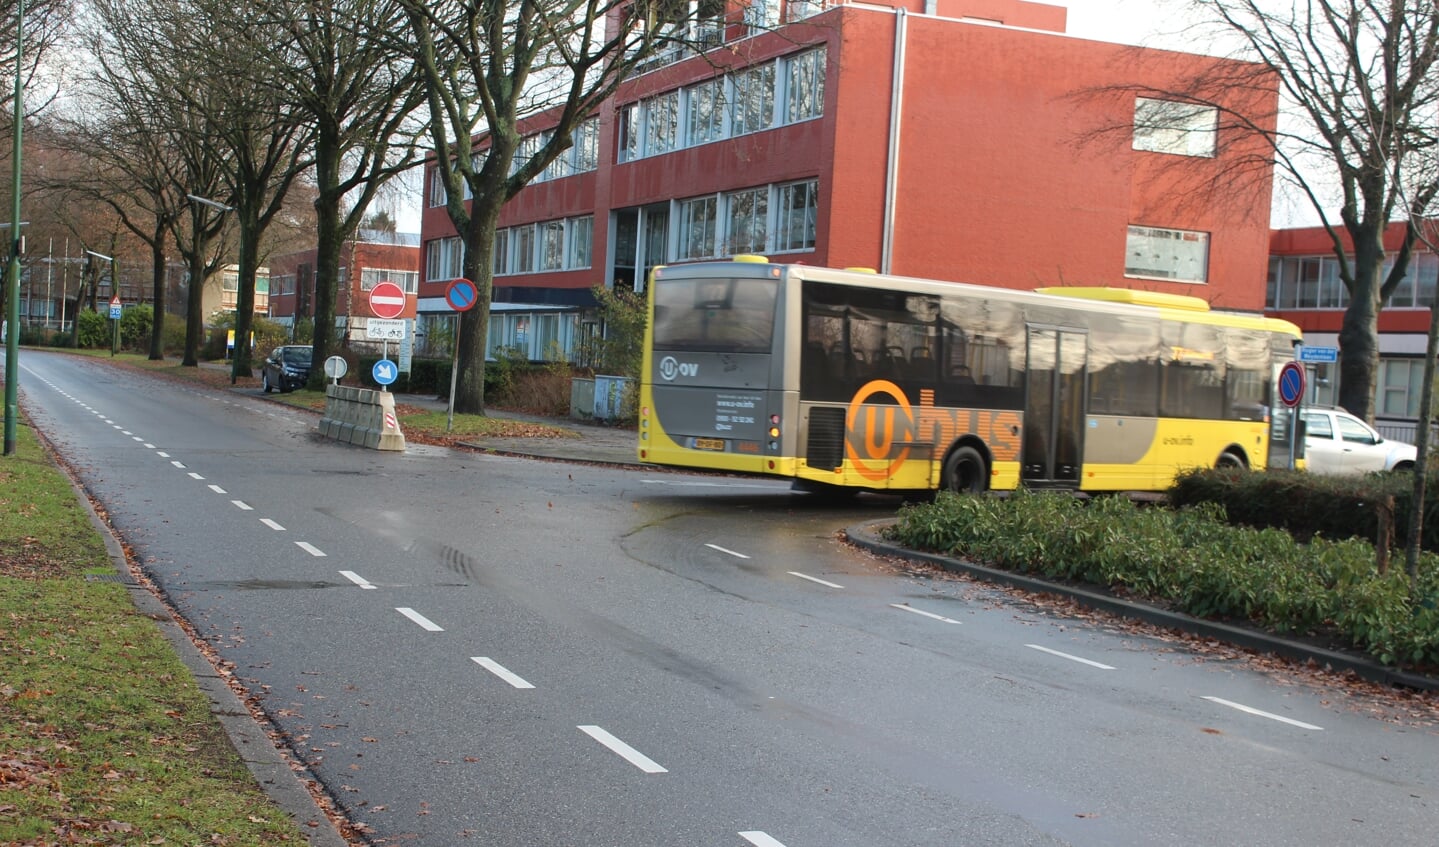 Buslijn 77 en buslijn 78 lopen in de huidige situatie volgens de route Rembrandtlaan. Door voor beide lijnen de huidige routering aan te houden is er op de Jan Steenlaan geen passerend busverkeer. Daarnaast heeft de haltering van bussen op de rijbaan een snelheid-remmend effect. 